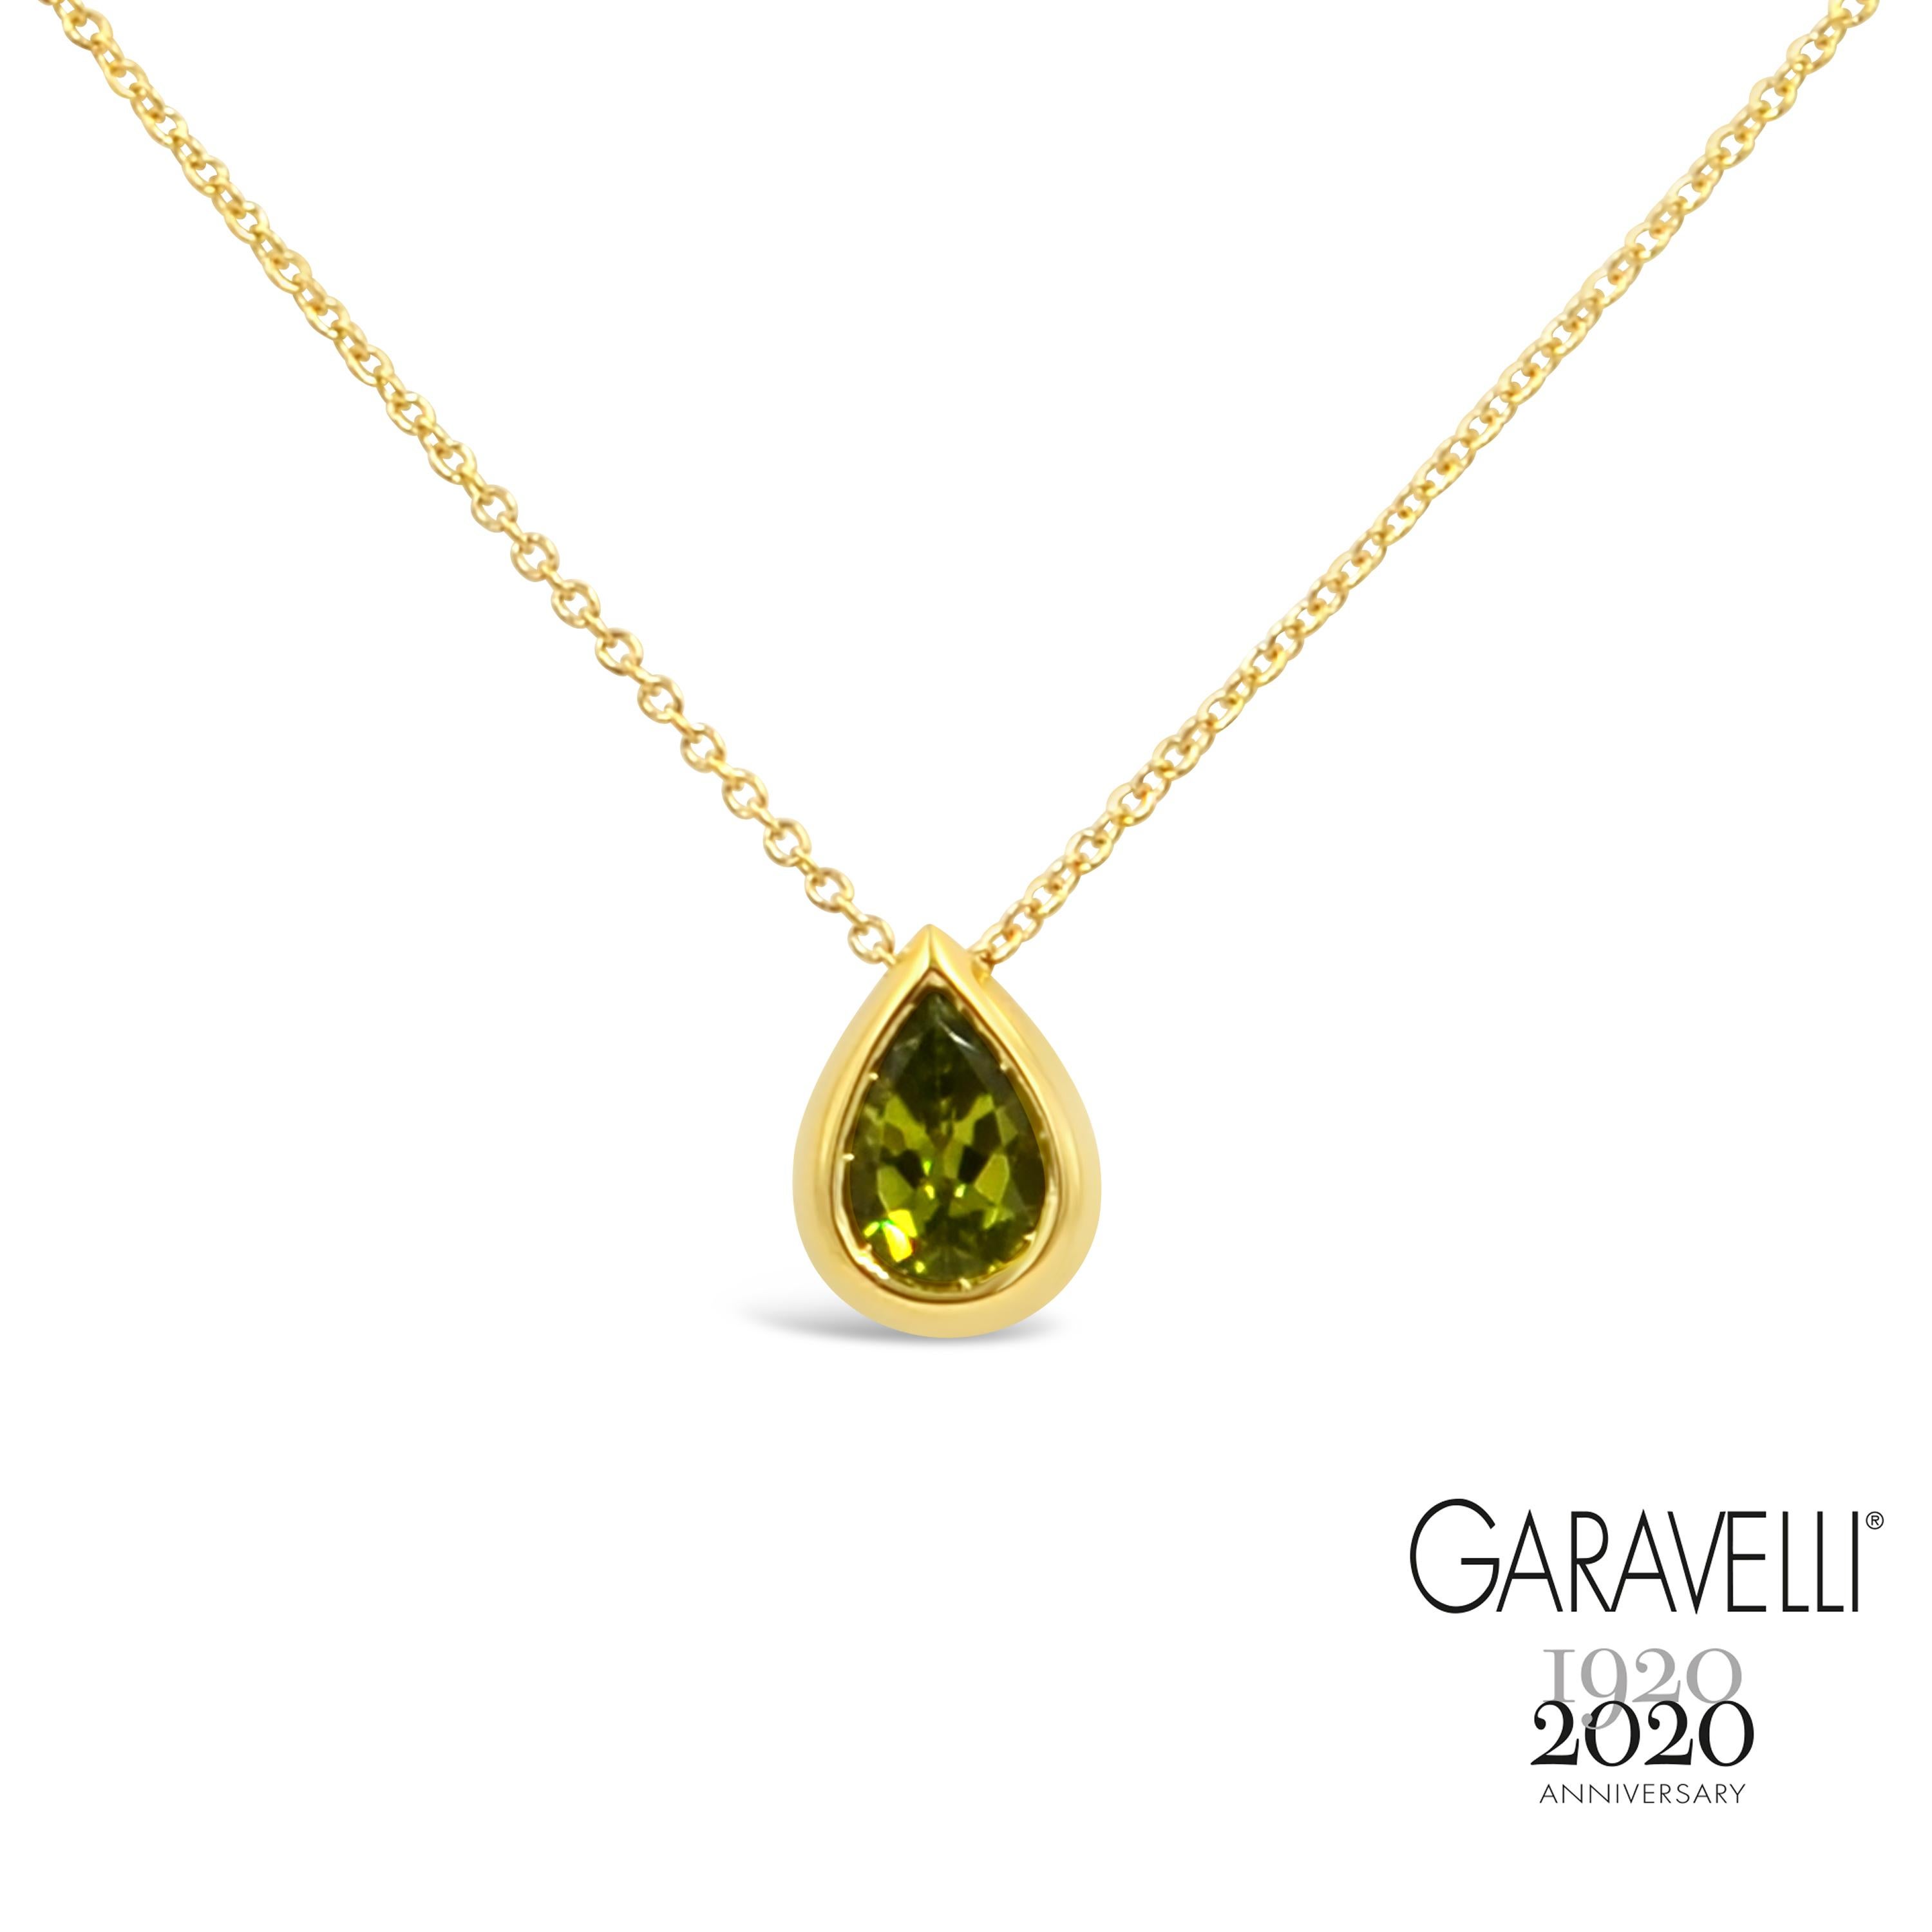 Round Cut Garavelli Drop Pendant in 18 Karat Gold with Orange Sapphires